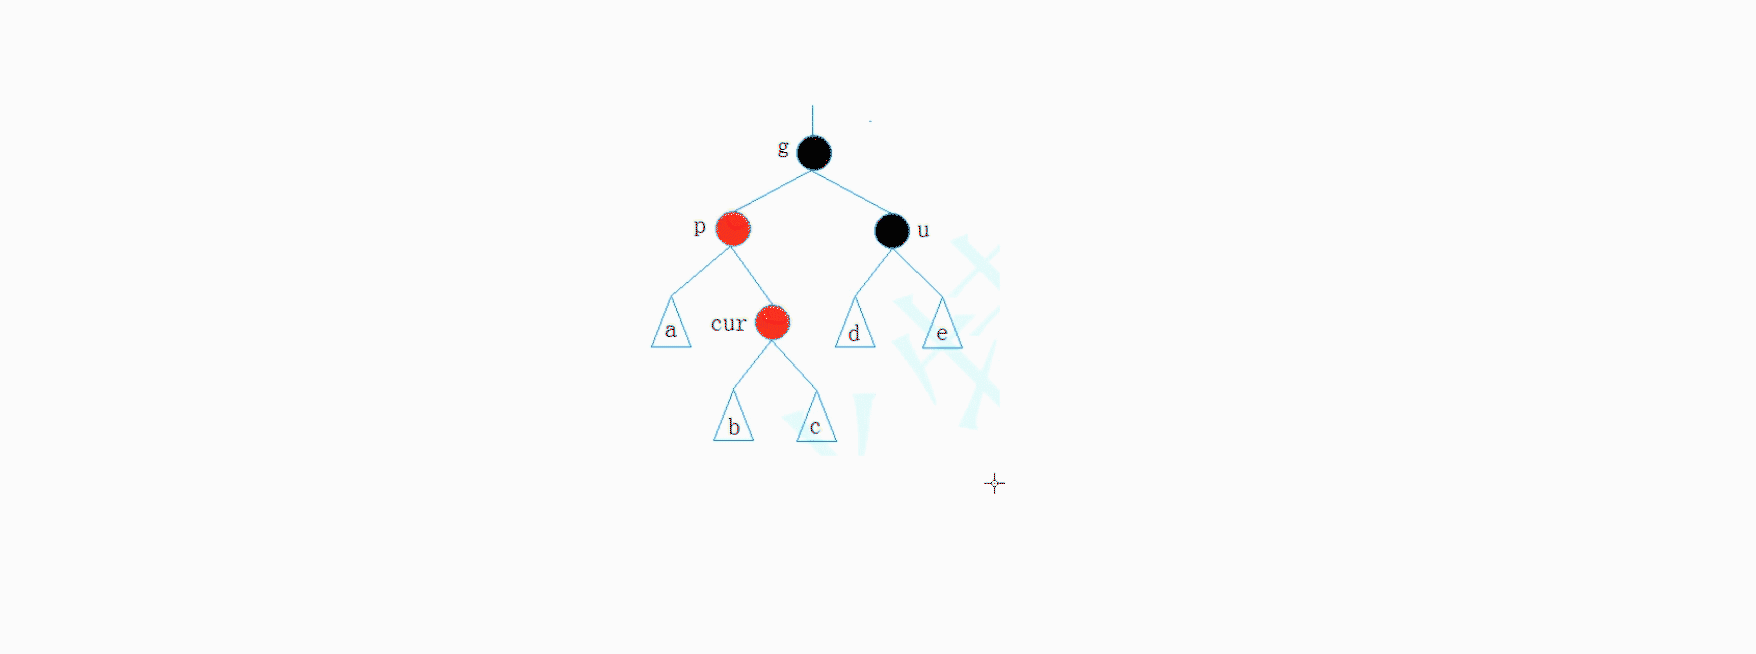 AVL树和红黑树的模拟实现_搜索二叉树_35